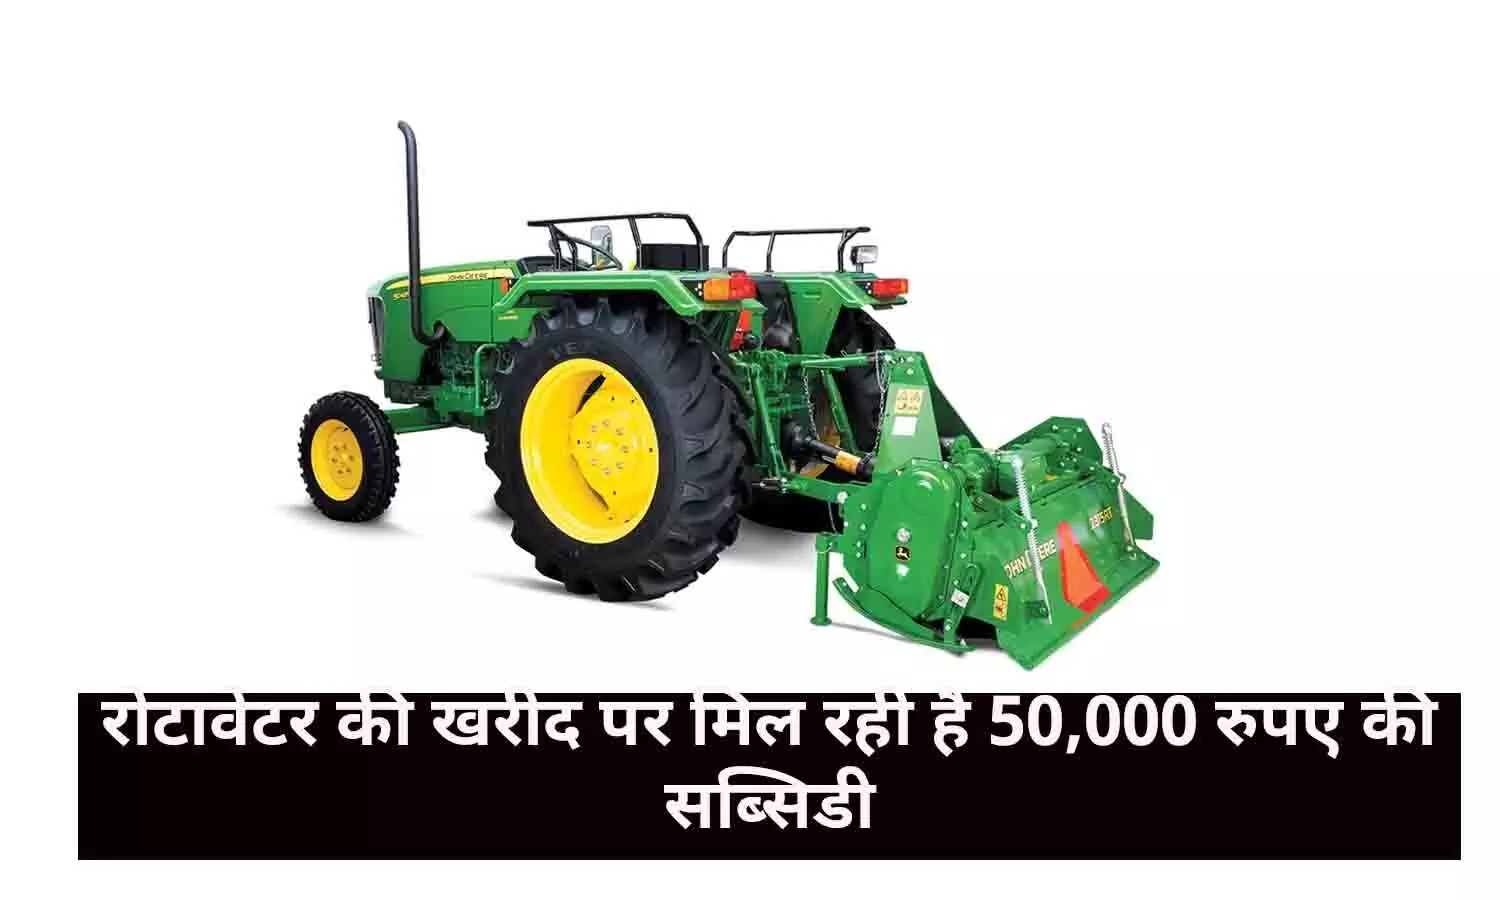 Uttar Pradesh, Rajasthan और Madhya Pradesh के किसानों के लिए खुशखबरी! रोटावेटर की खरीद पर मिल रही है 50,000 रुपए की सब्सिडी, जाने